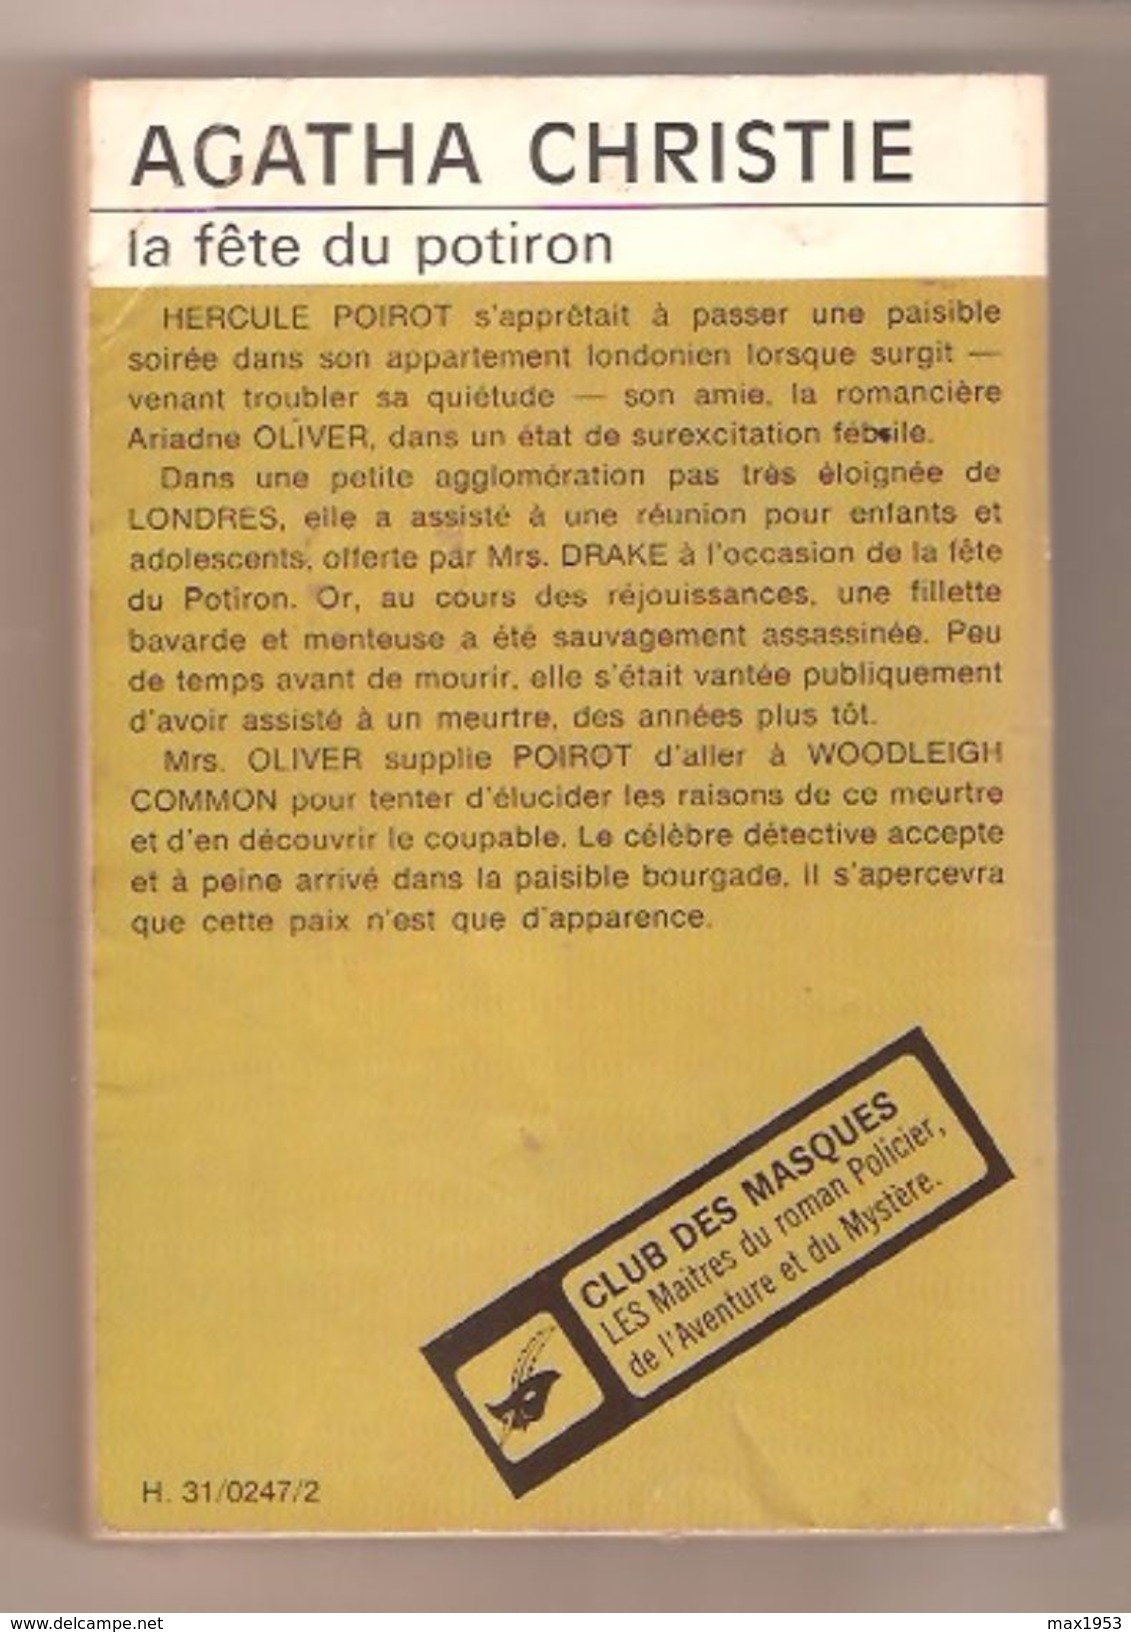 Agatha Christie - La Fête Du Potiron - Club Des Masques N° 174 - 1974 - Agatha Christie